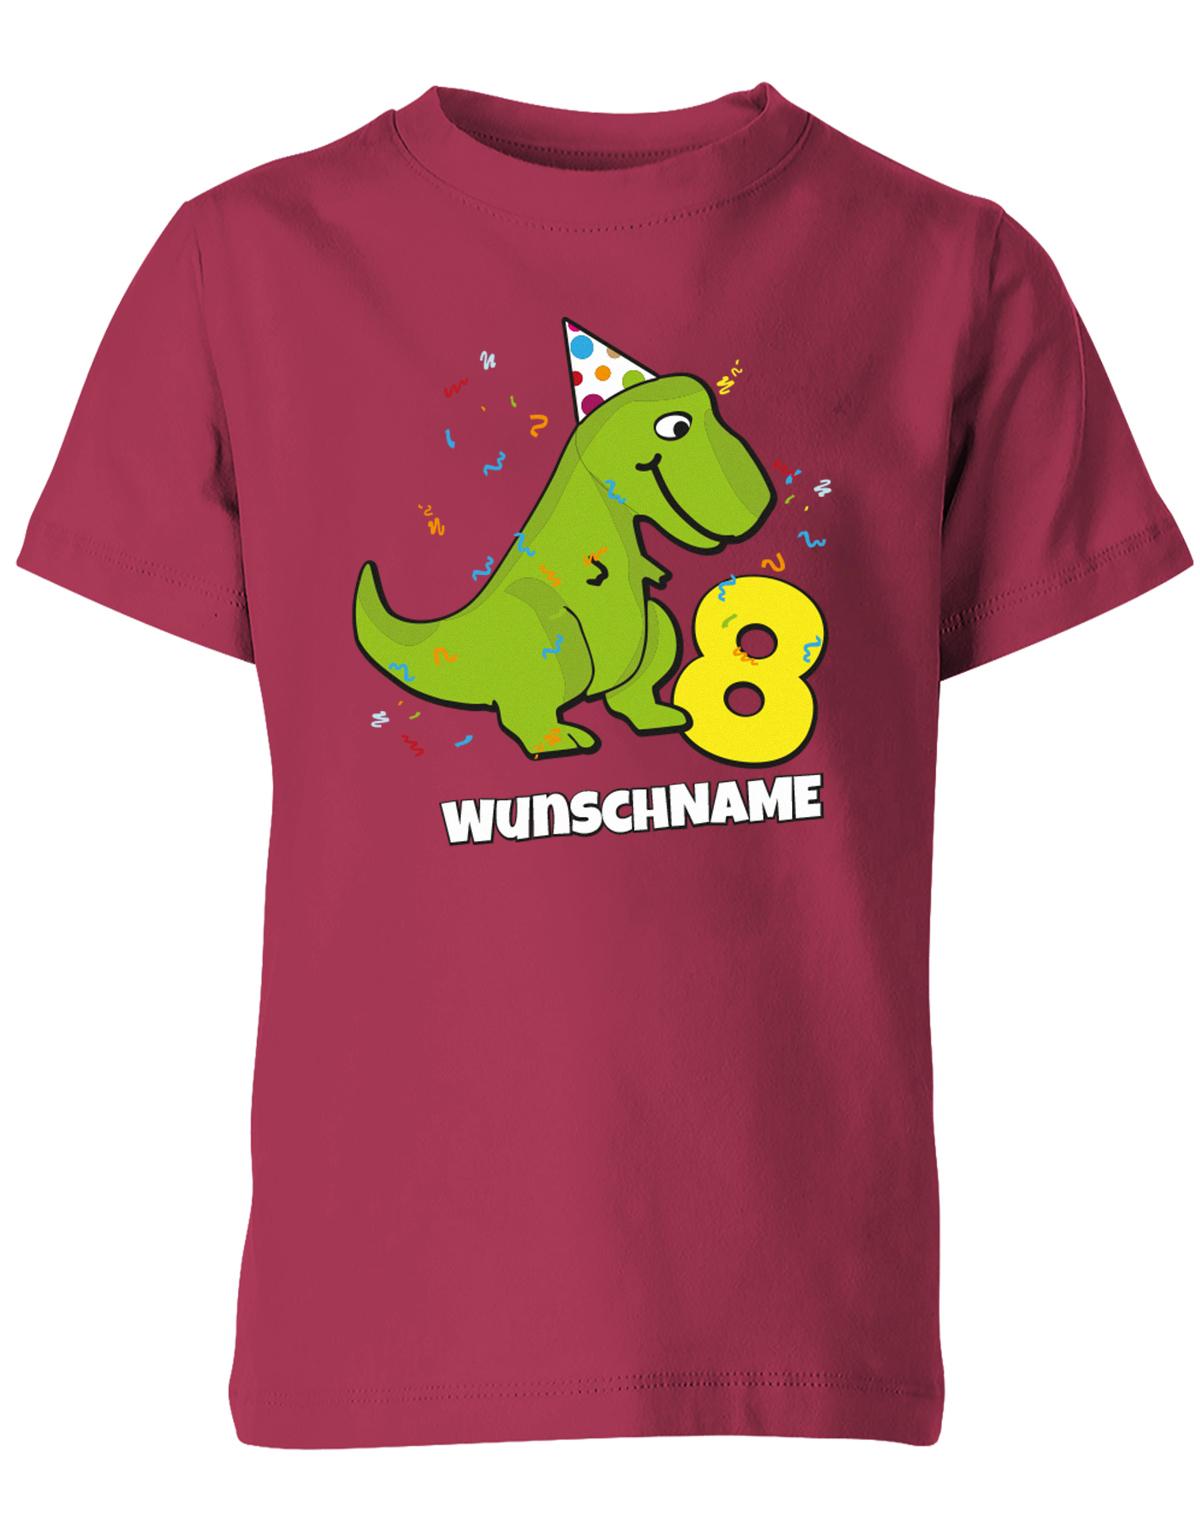 ich-bin-8-Dinosaurier-t-rex-wunschname-geburtstag-kinder-shirt-sorbet